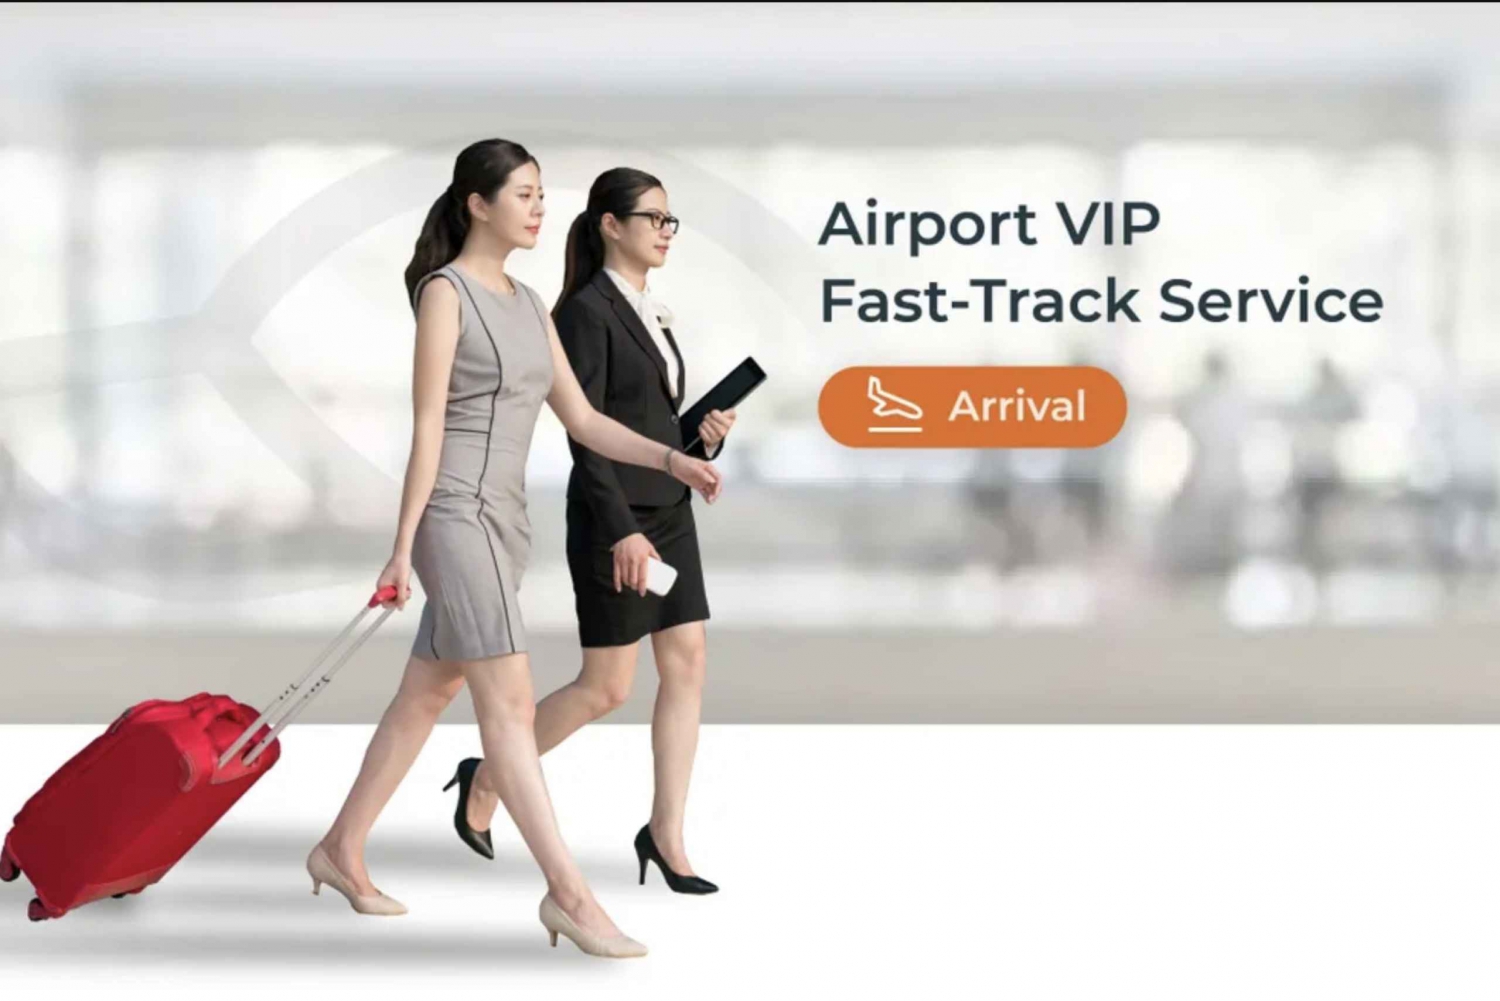 Bangkok airport Fast-track VIP service